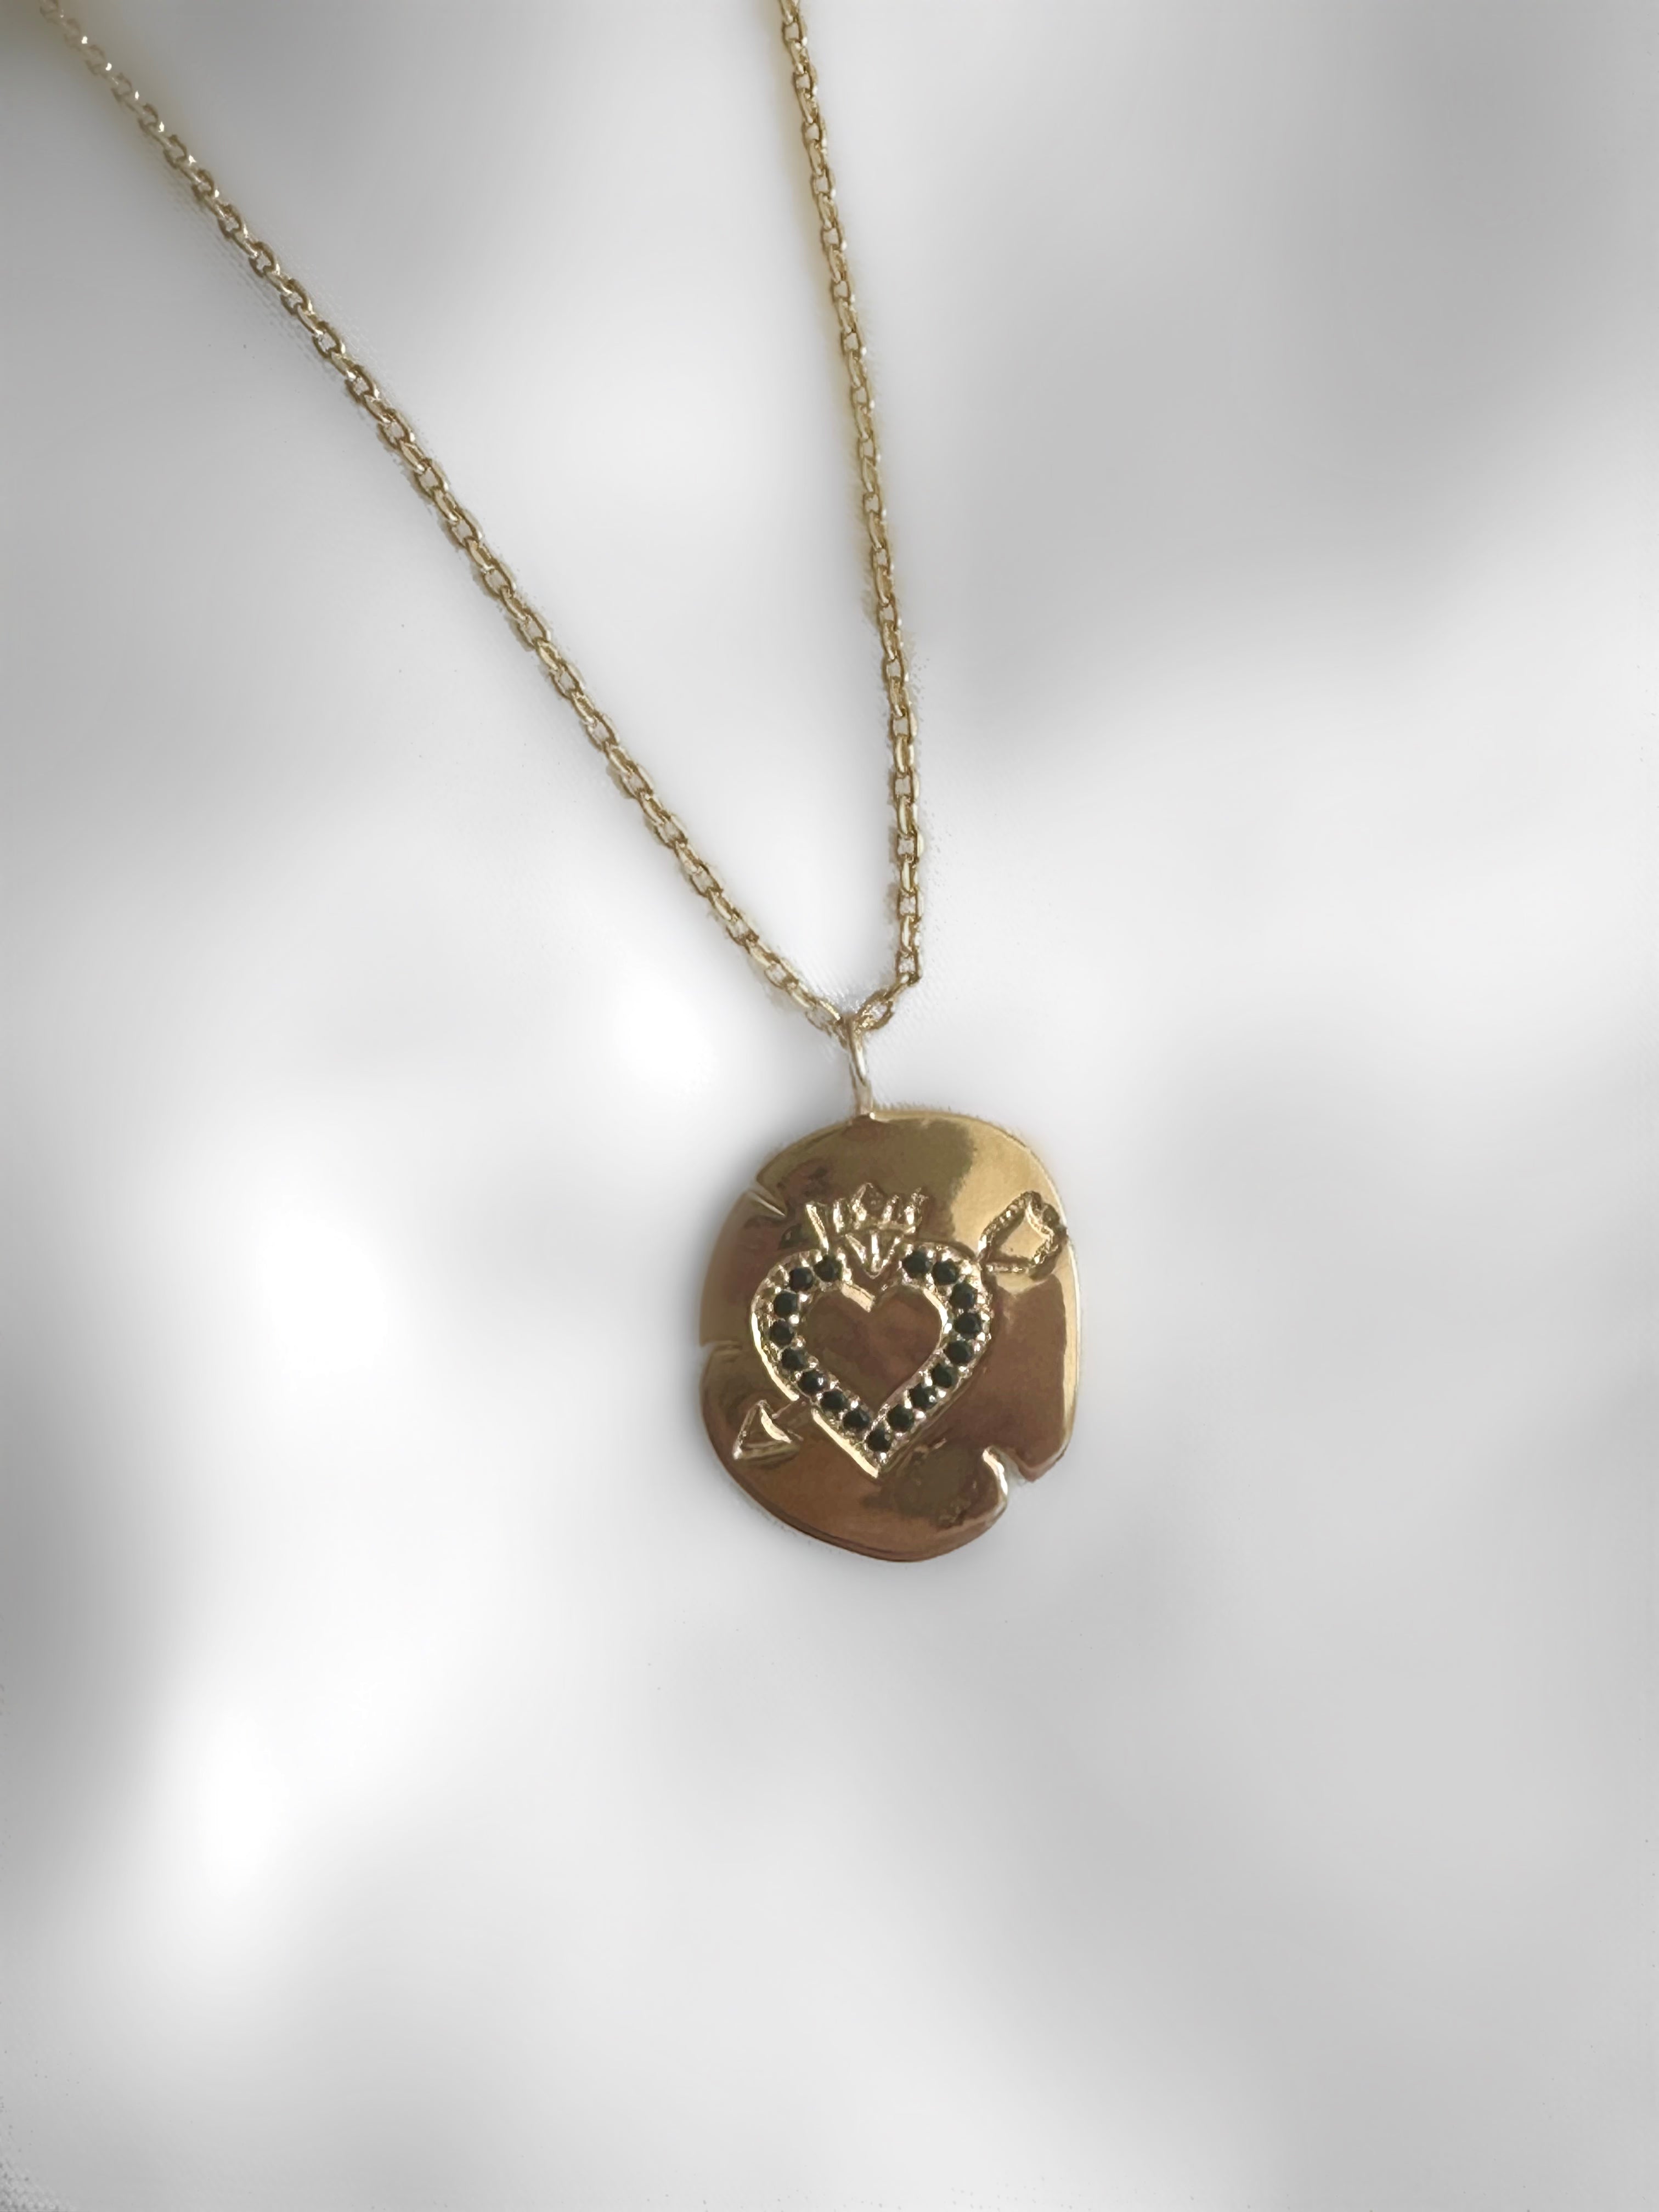 Le Marshand®  -  Joyería en plata 925, chapado en Oro 24K - Collar King Heart - Diseños propios - Brazaletes, pulseras, collares y pendientes - Joyería online - Mallorca